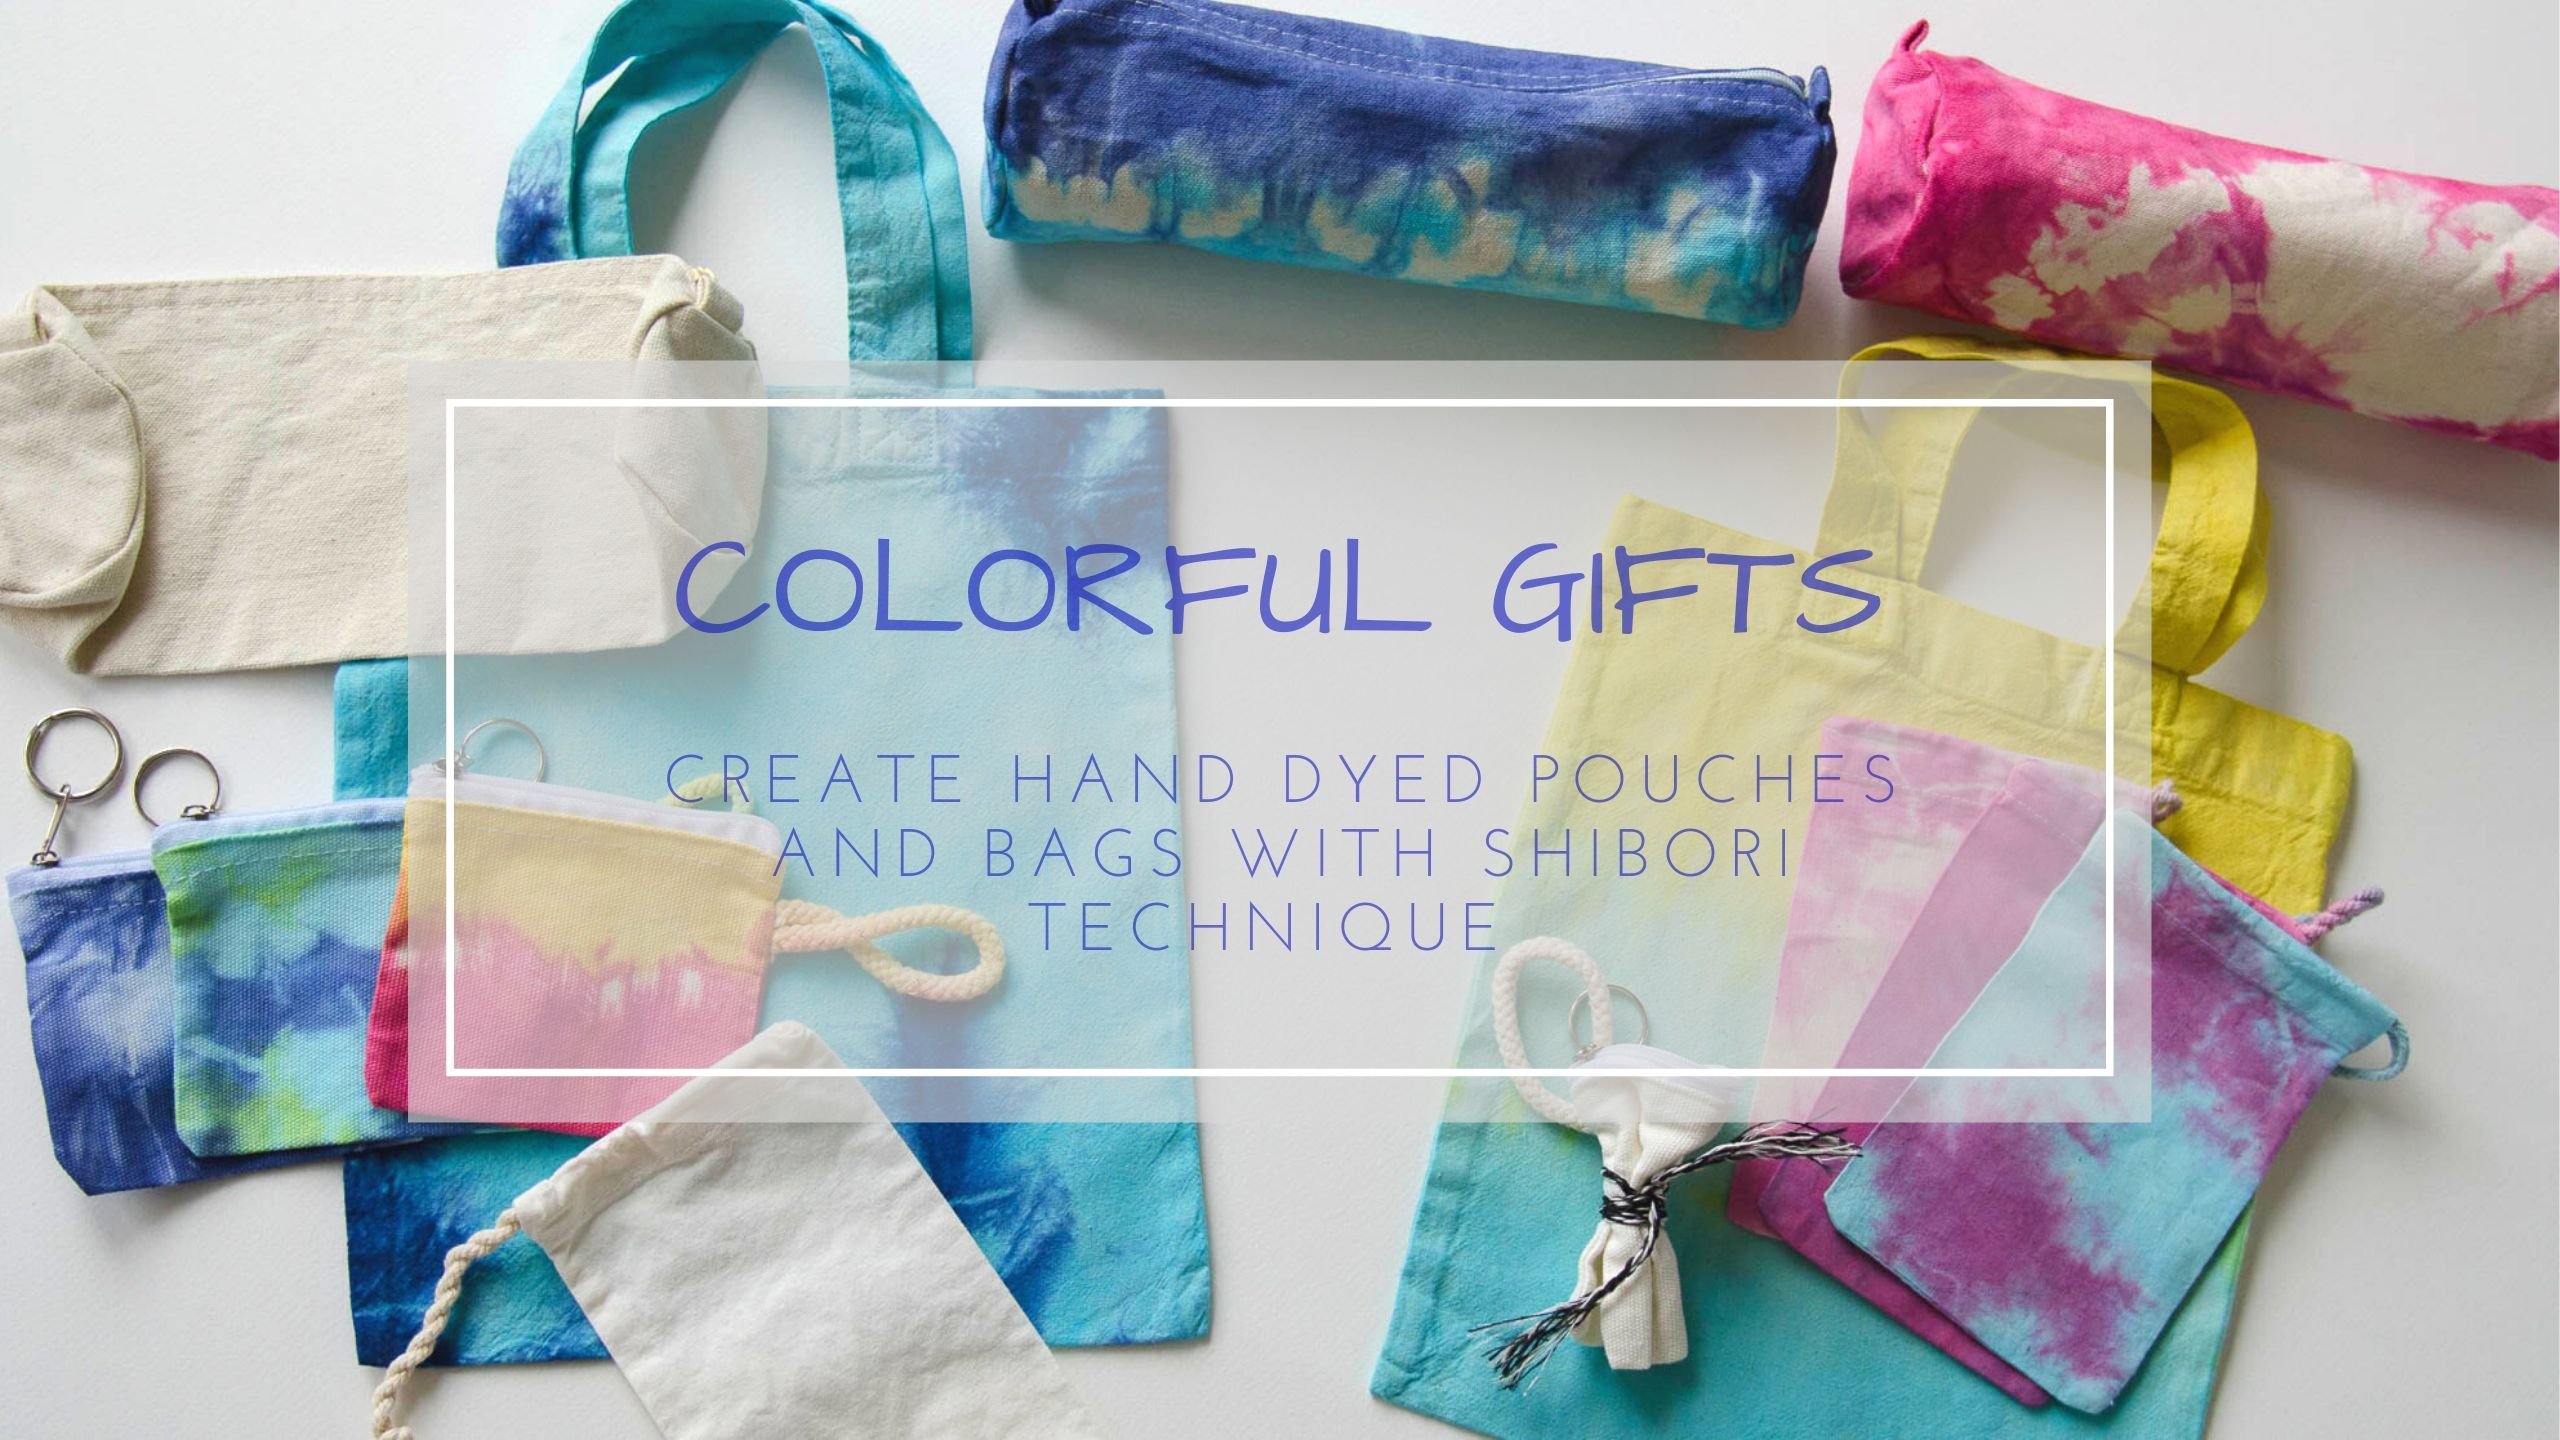 آموزش هدایای رنگارنگ - با تکنیک شیبوری کیسه ها و کیف های رنگ شده با دست ایجاد کنید